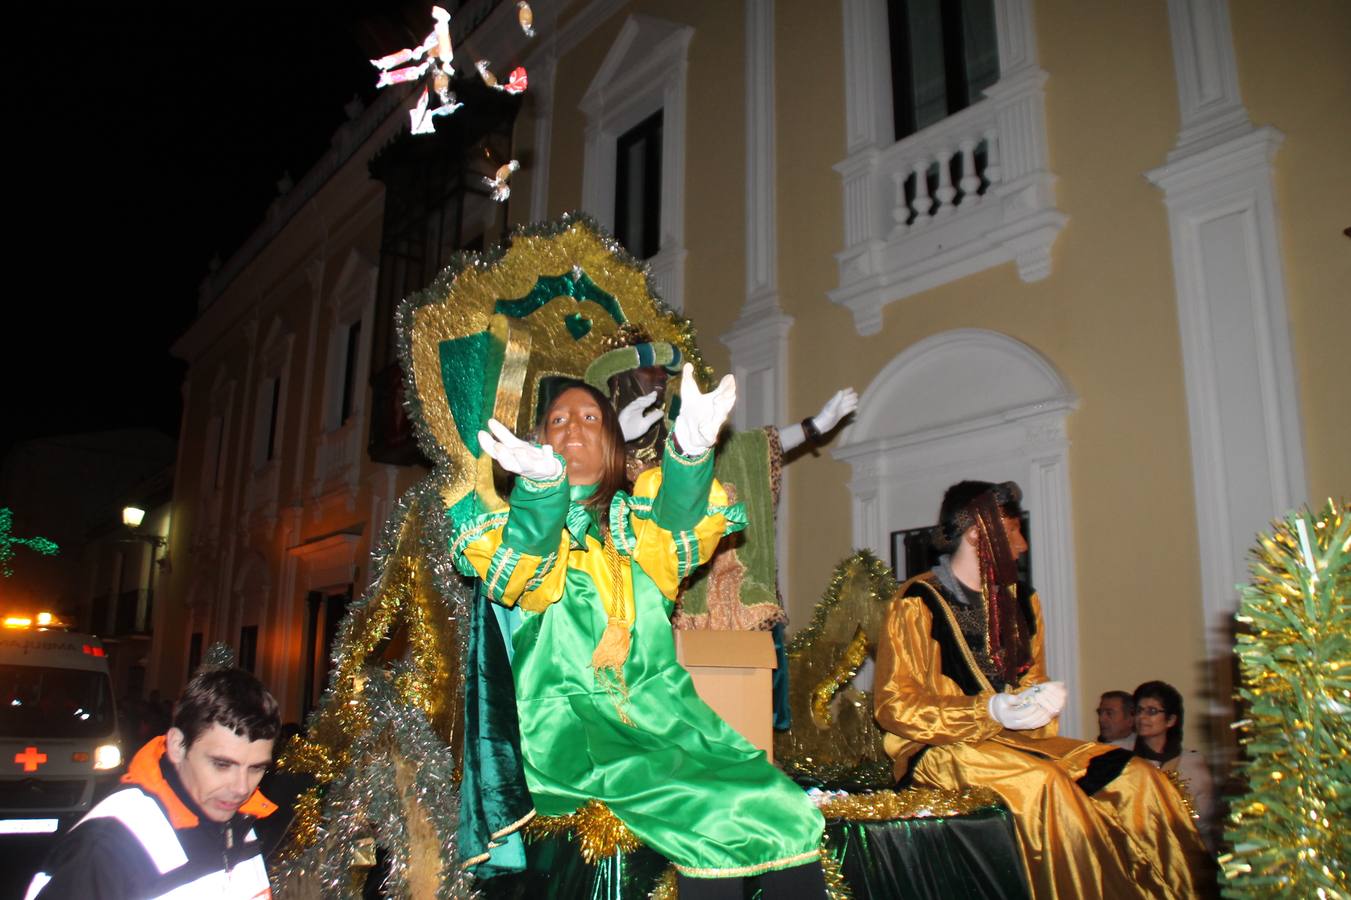 Fantasía, colorido y animación, envolvieron la Cabalta de Reyes